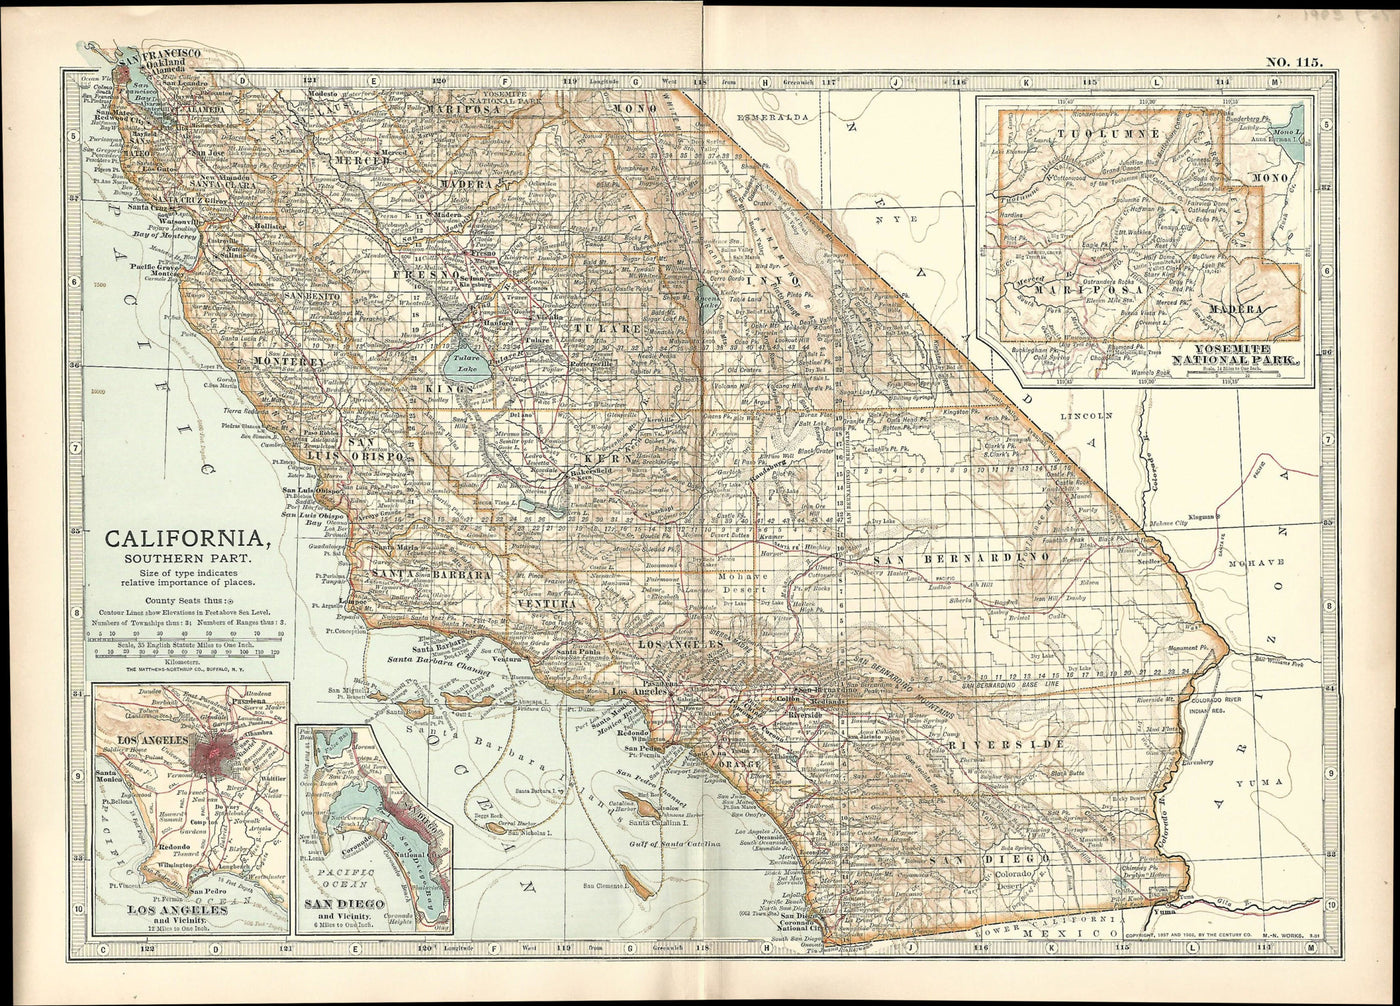 California Southern Part antique map Encyclopedia Britannica 1903